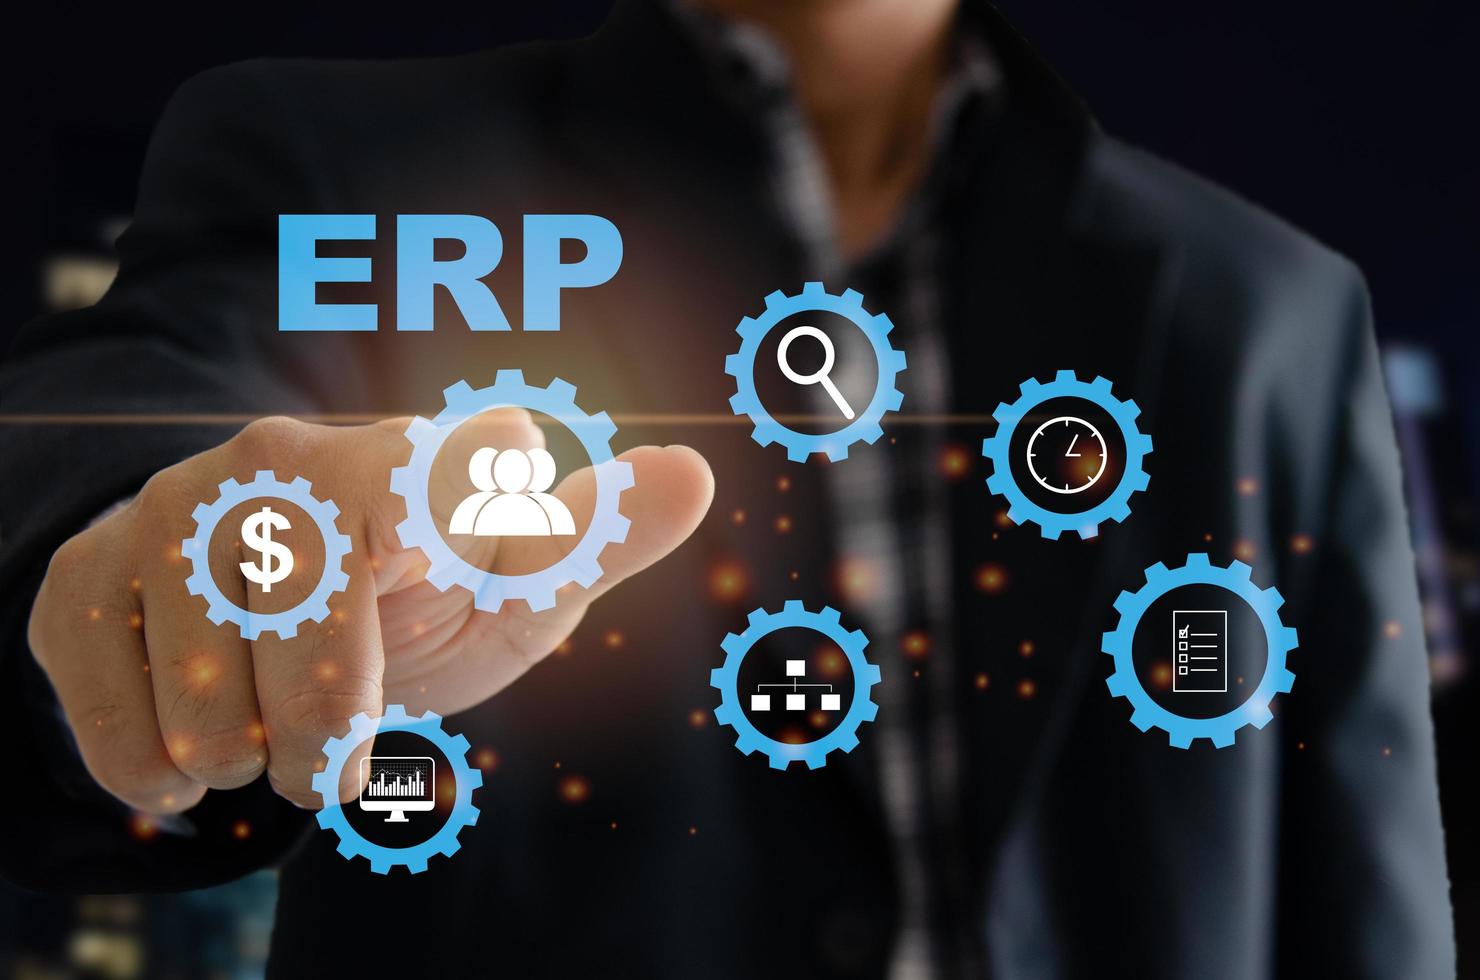 Sistema de software ERP de planificación de recursos empresariales para planes de recursos empresariales. la mano de un hombre toca la palabra erp en una pantalla virtual. foto